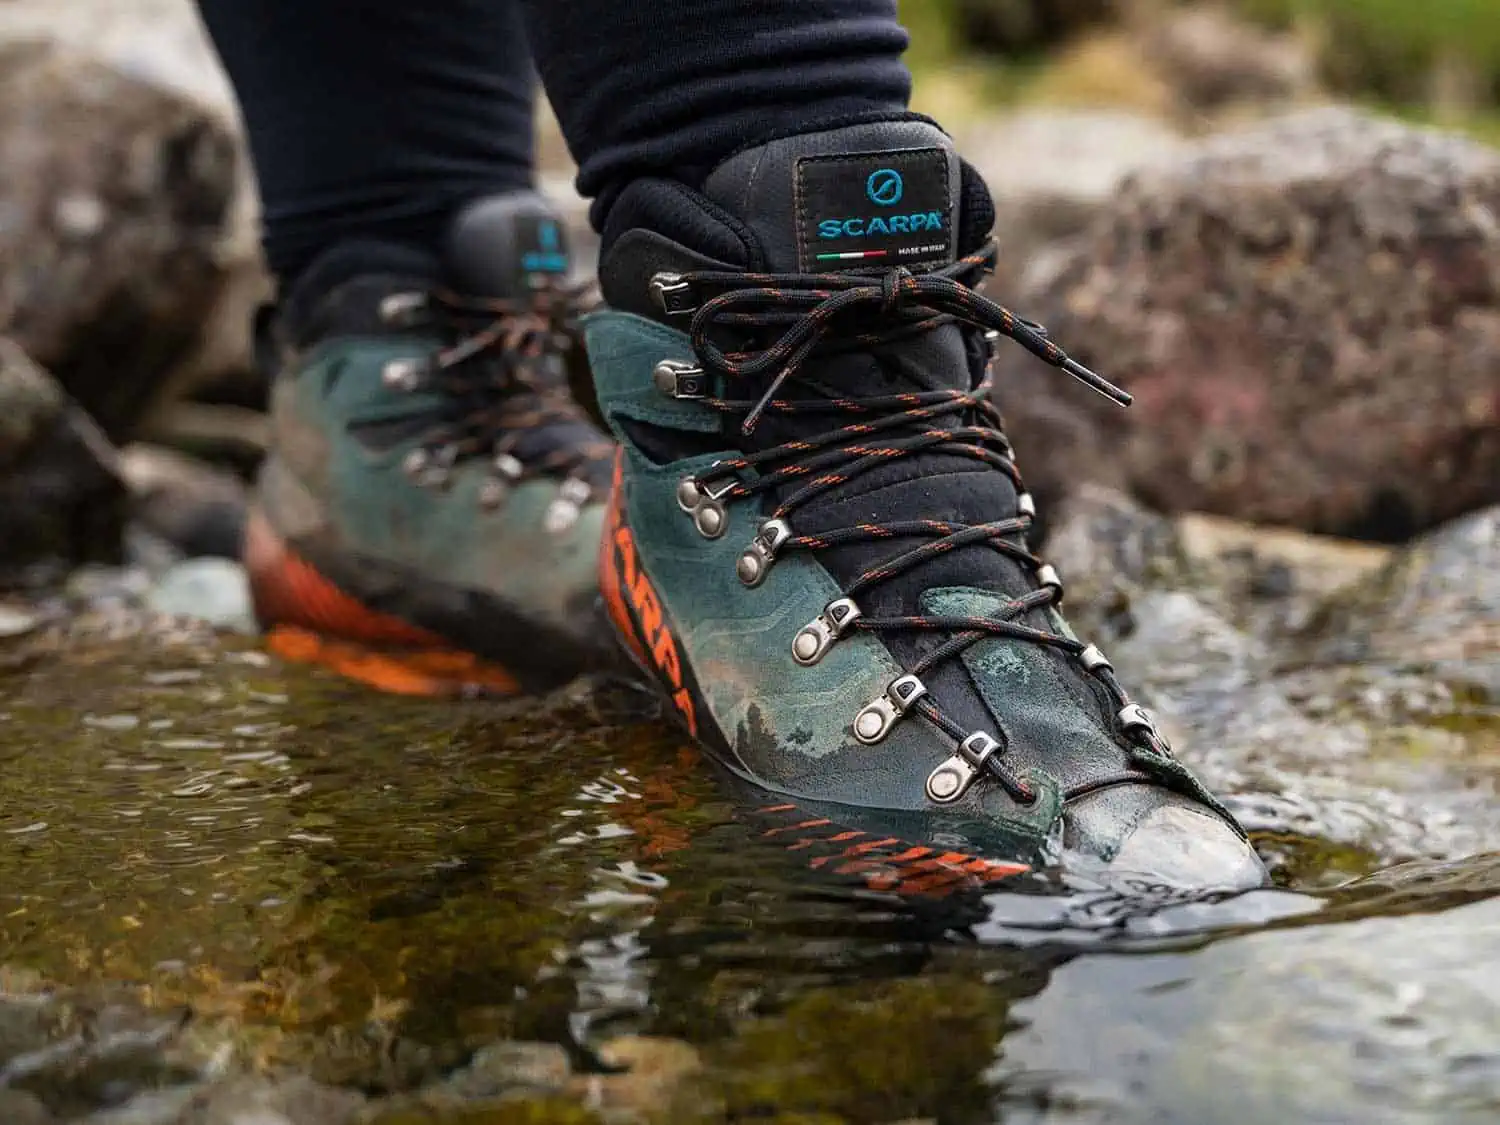 scarpa ribelle lite hd waterproof hiking boot in stream crossing